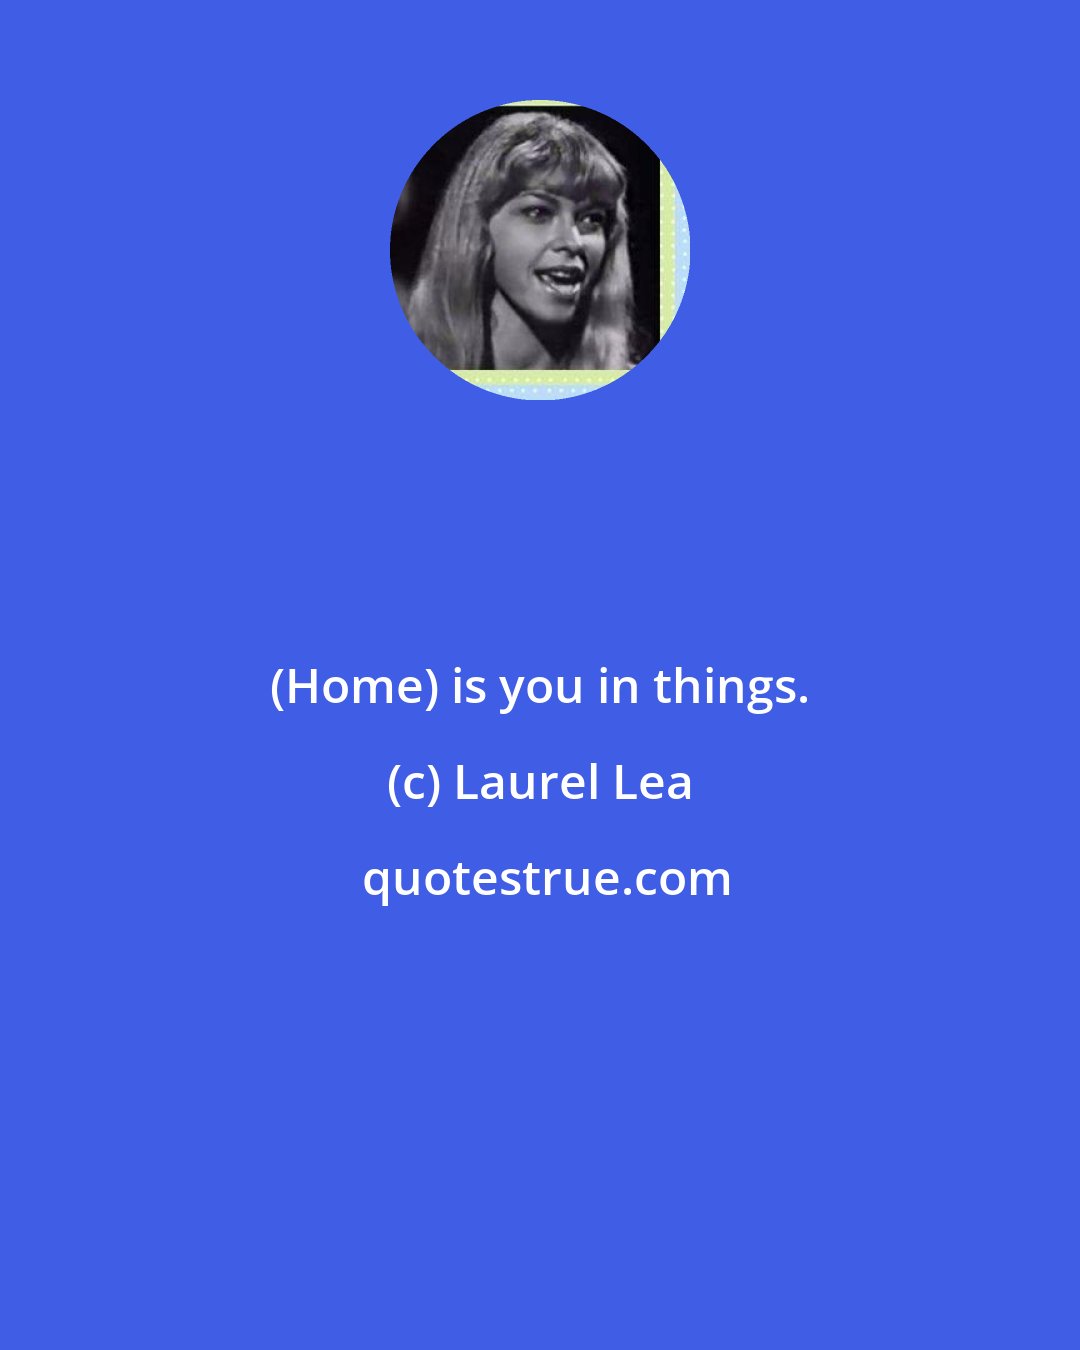 Laurel Lea: (Home) is you in things.